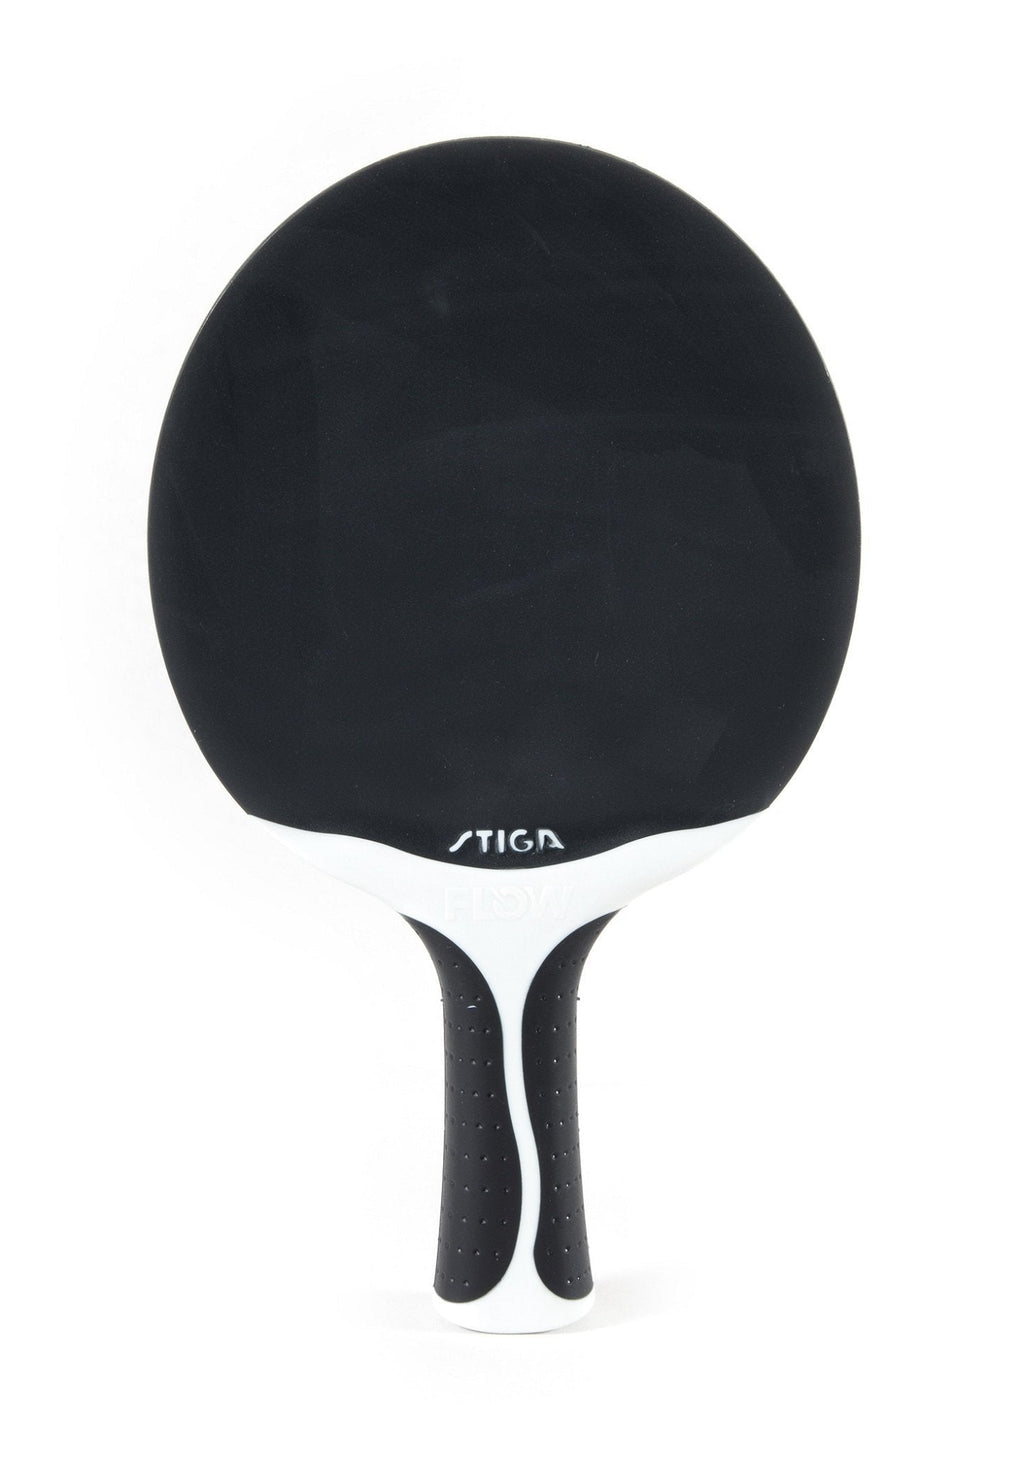 [AUSTRALIA] - STIGA Flow Outdoor Table Tennis Racket Black/White 